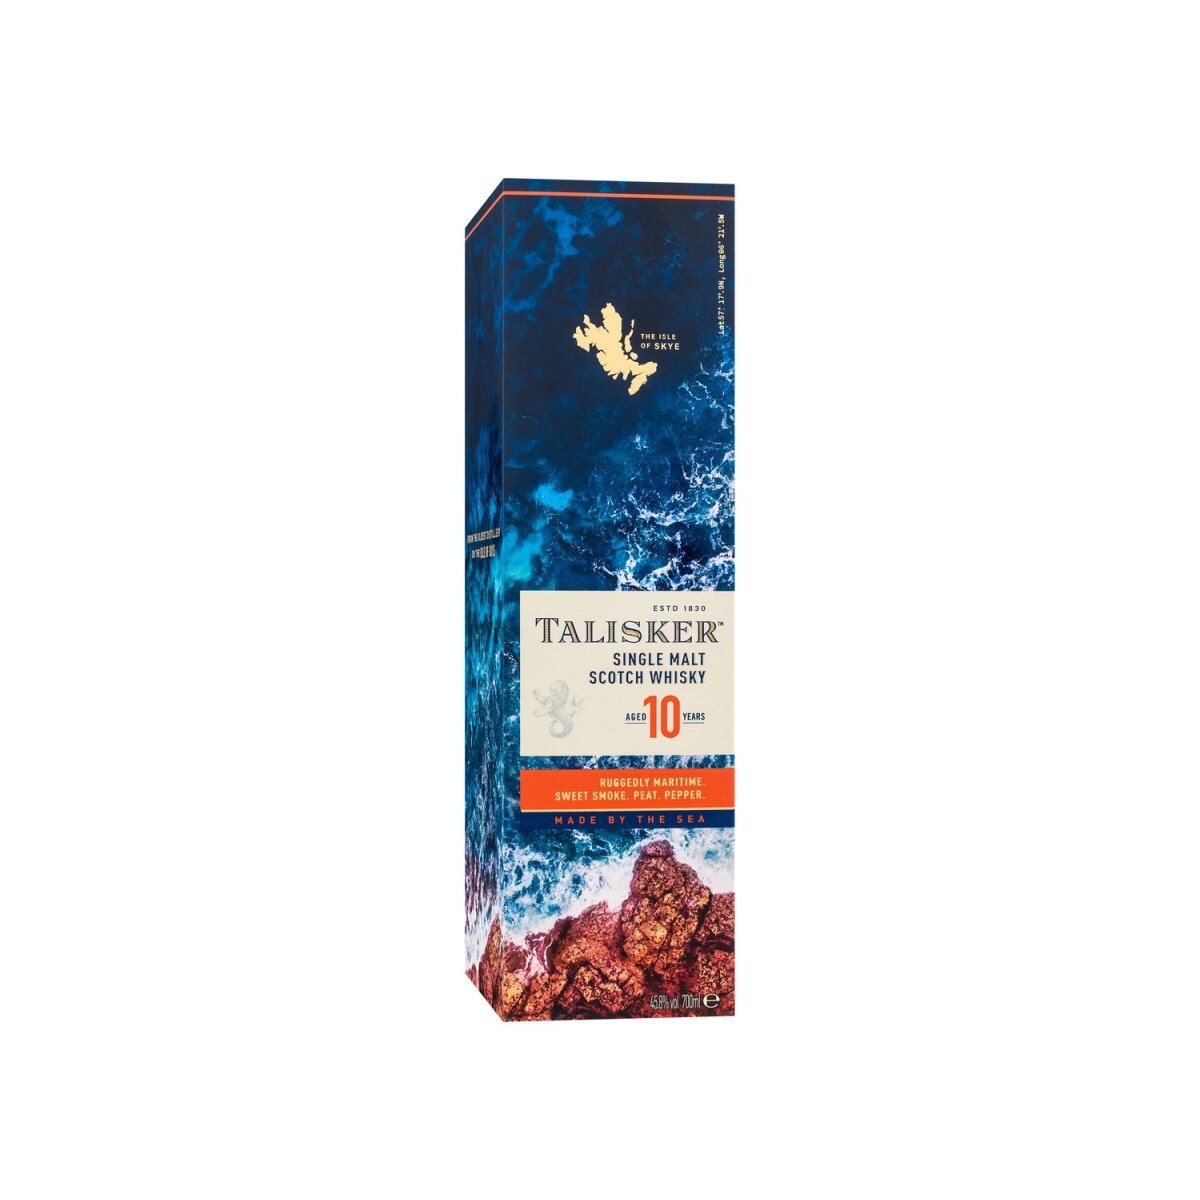 Talisker Single Malt Scotch Whisky 10 Jahre mit Geschenkbox 45,8% Vol,  26,99 € | Likör